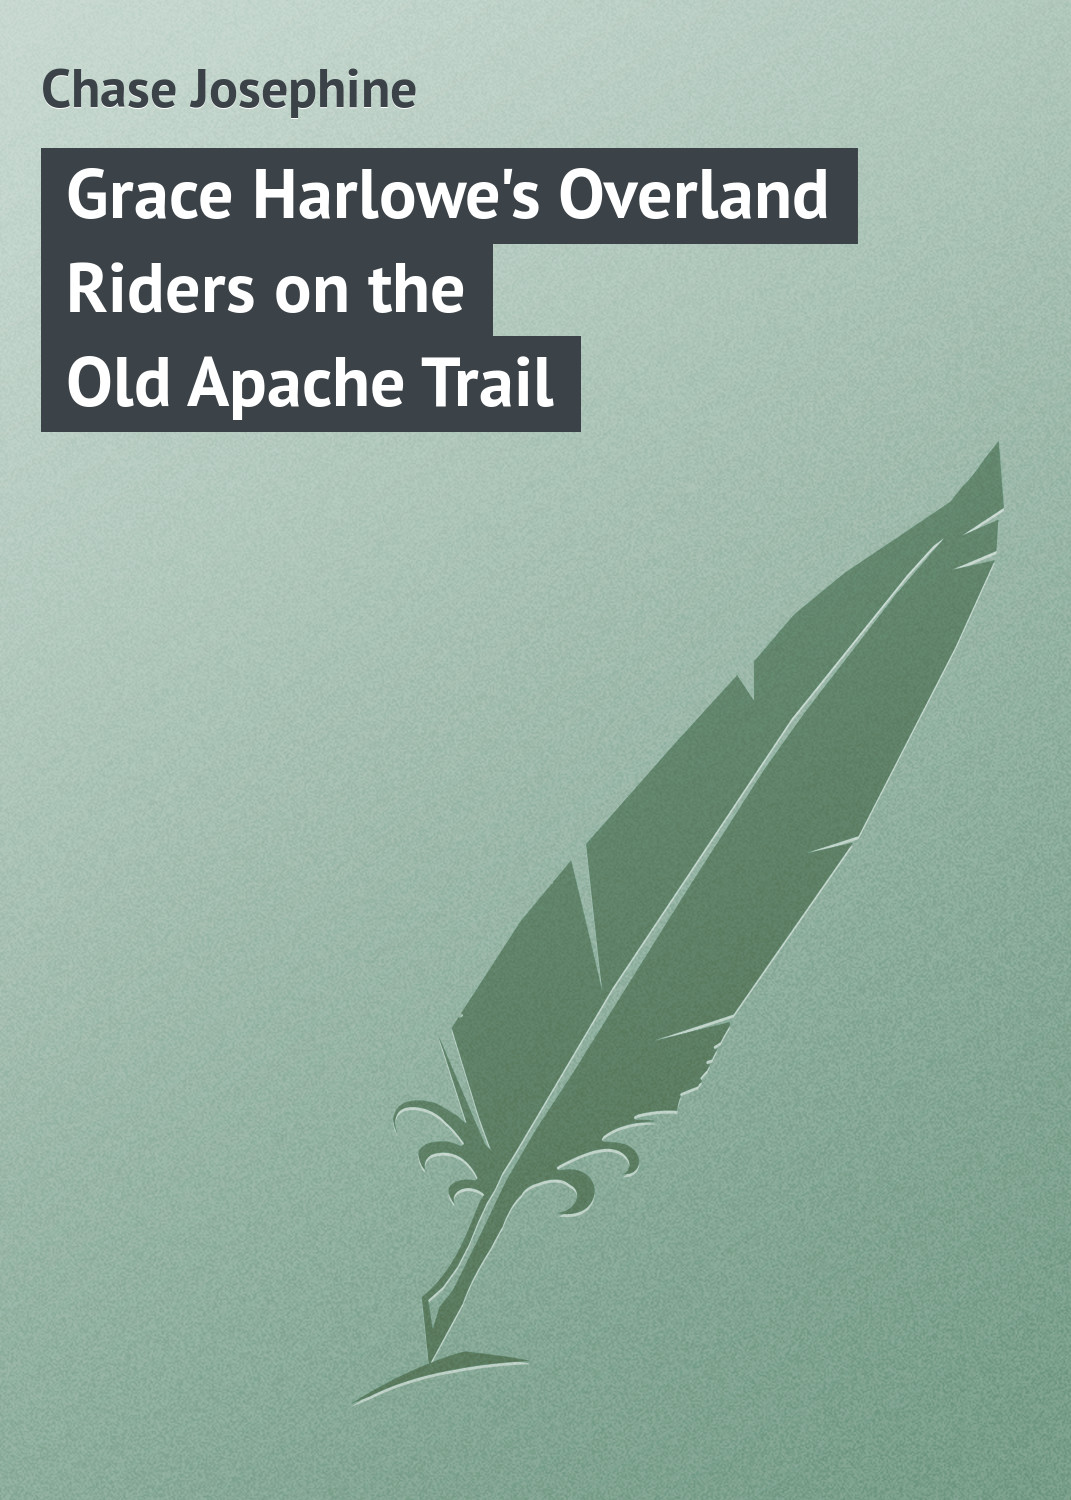 Книга Grace Harlowe's Overland Riders on the Old Apache Trail из серии , созданная Chase Josephine, может относится к жанру Зарубежная классика. Стоимость электронной книги Grace Harlowe's Overland Riders on the Old Apache Trail с идентификатором 23145259 составляет 5.99 руб.